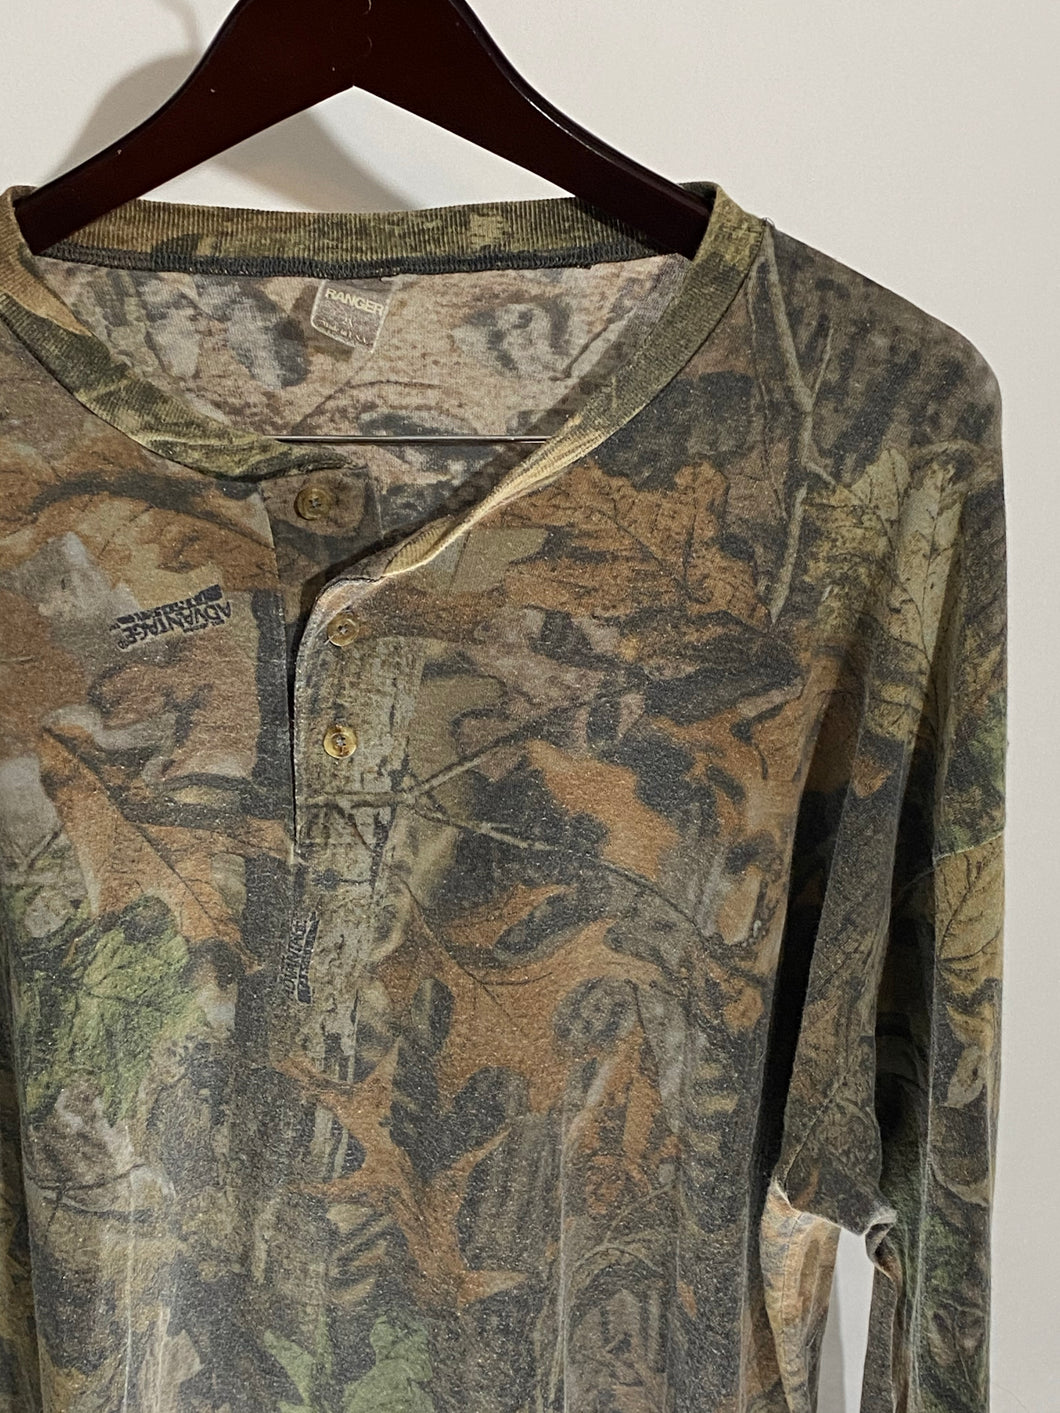 Ranger Realtree Henley Shirt (XL/XXL)